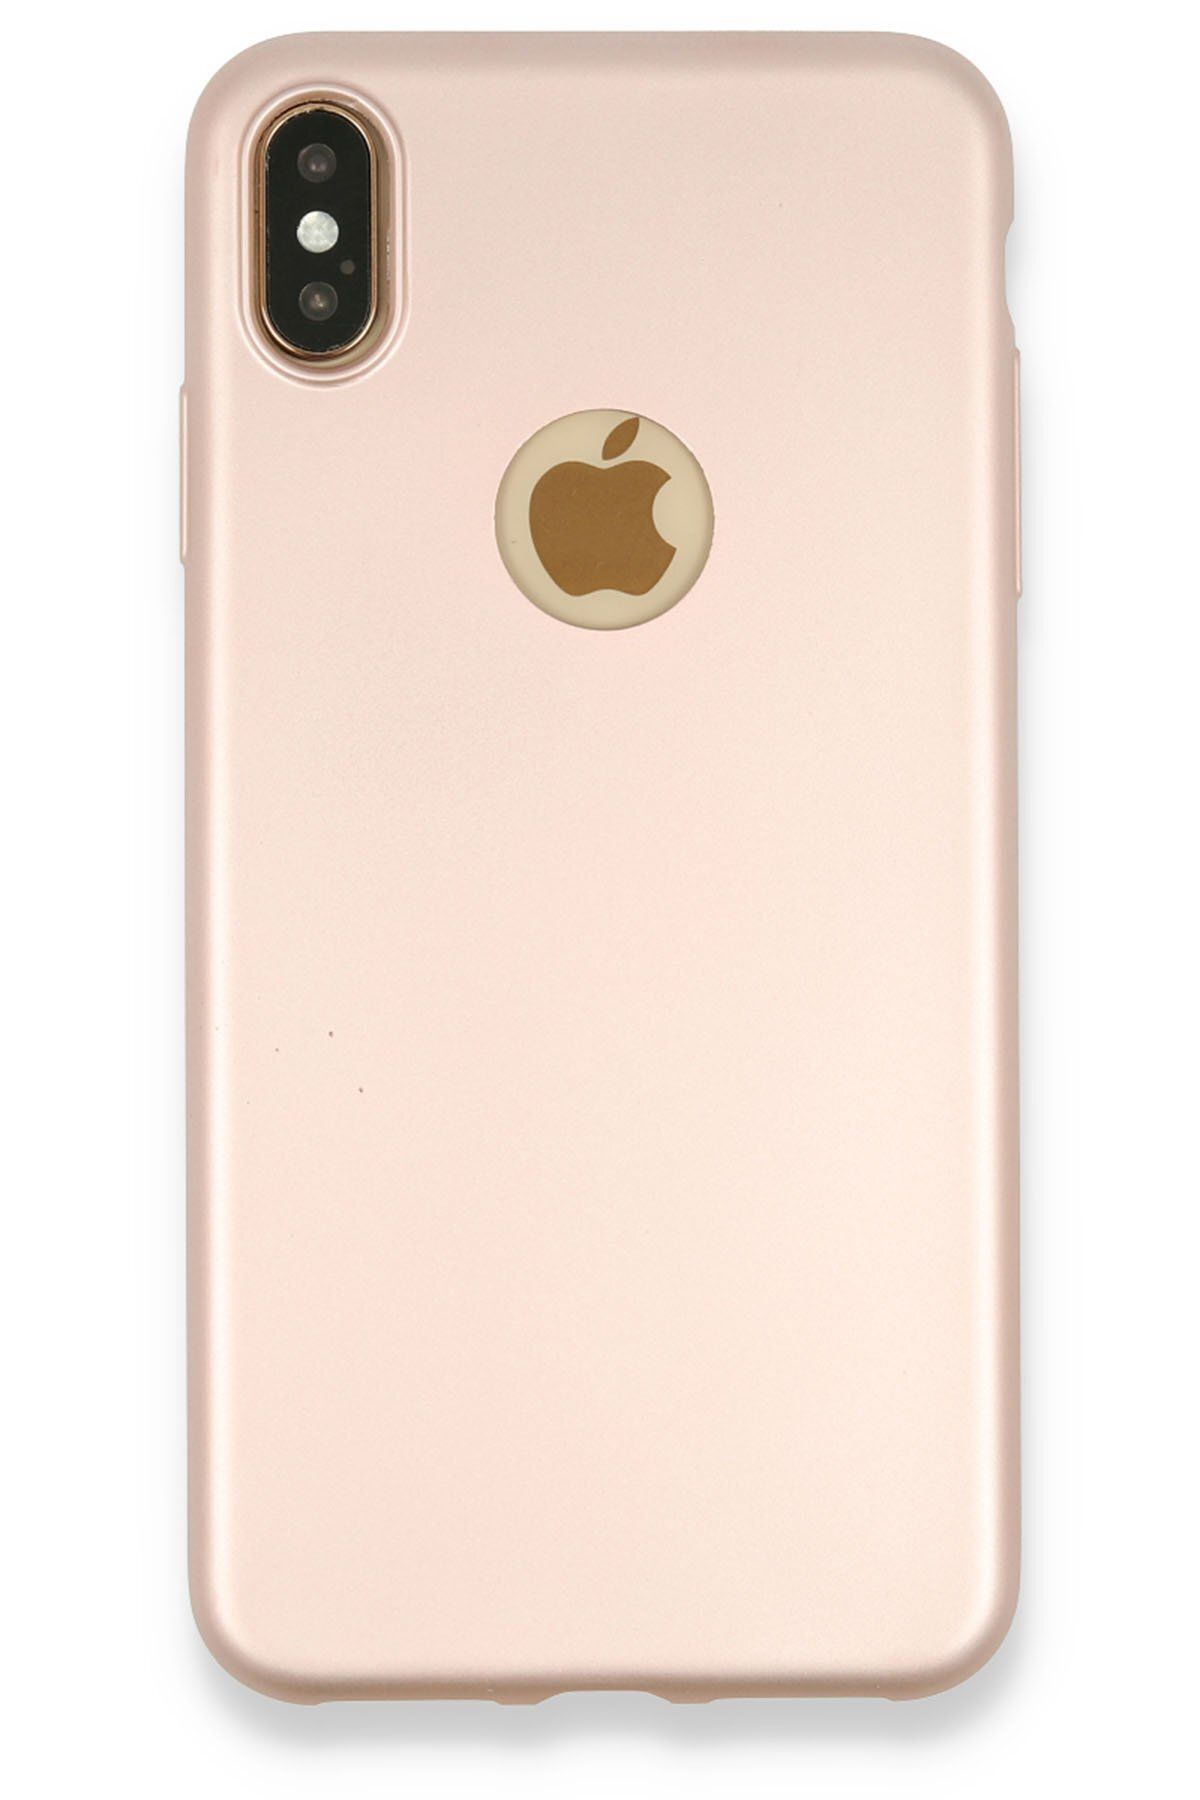 cepmoda iPhone XS Max Soft İnce Esnek Telefon Kılıfı - Rose Gold Renkli Slim Silikon Kapak